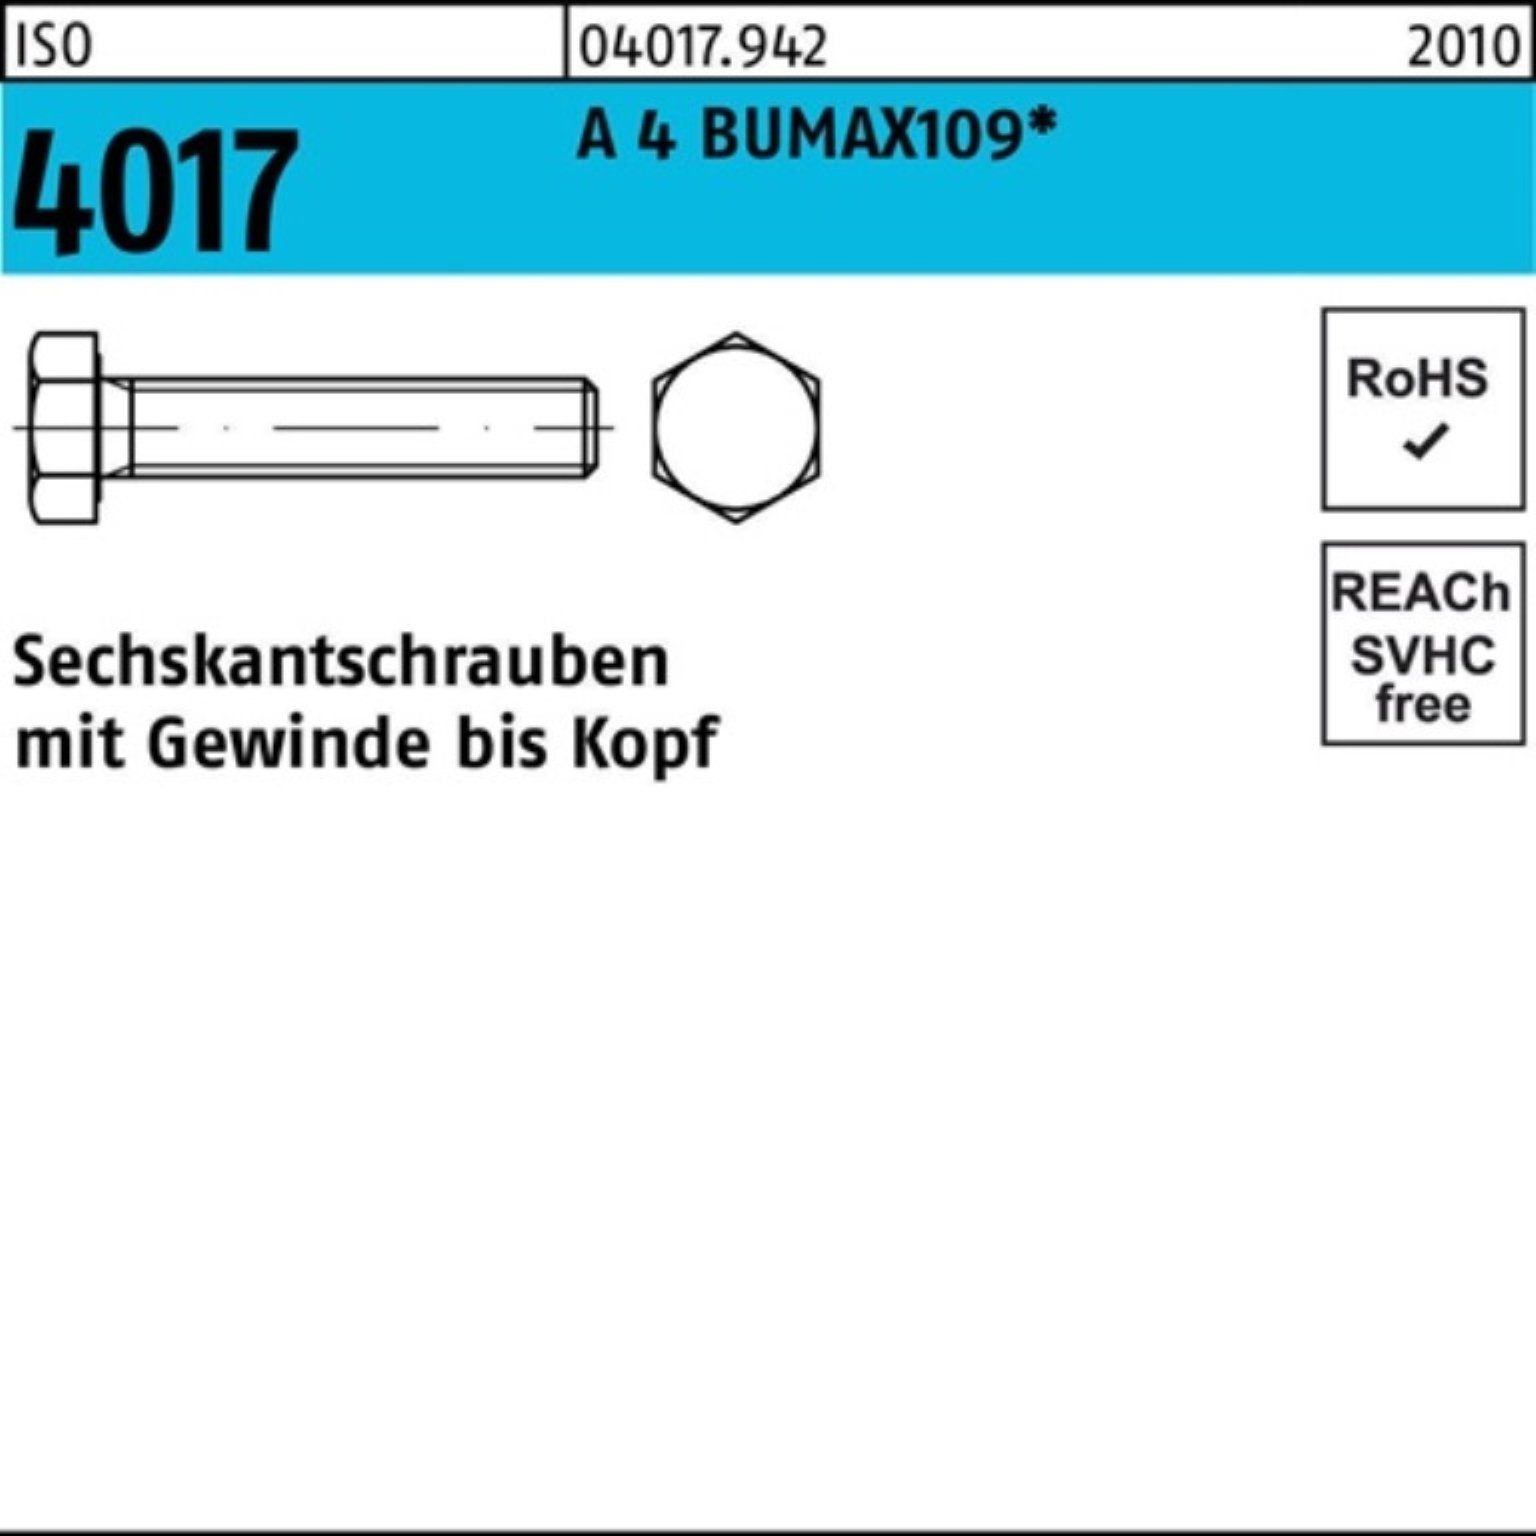 Bufab Sechskantschraube 100er Pack Sechskantschraube ISO 4017 VG M6x 20 A 4 BUMAX109 100 Stüc